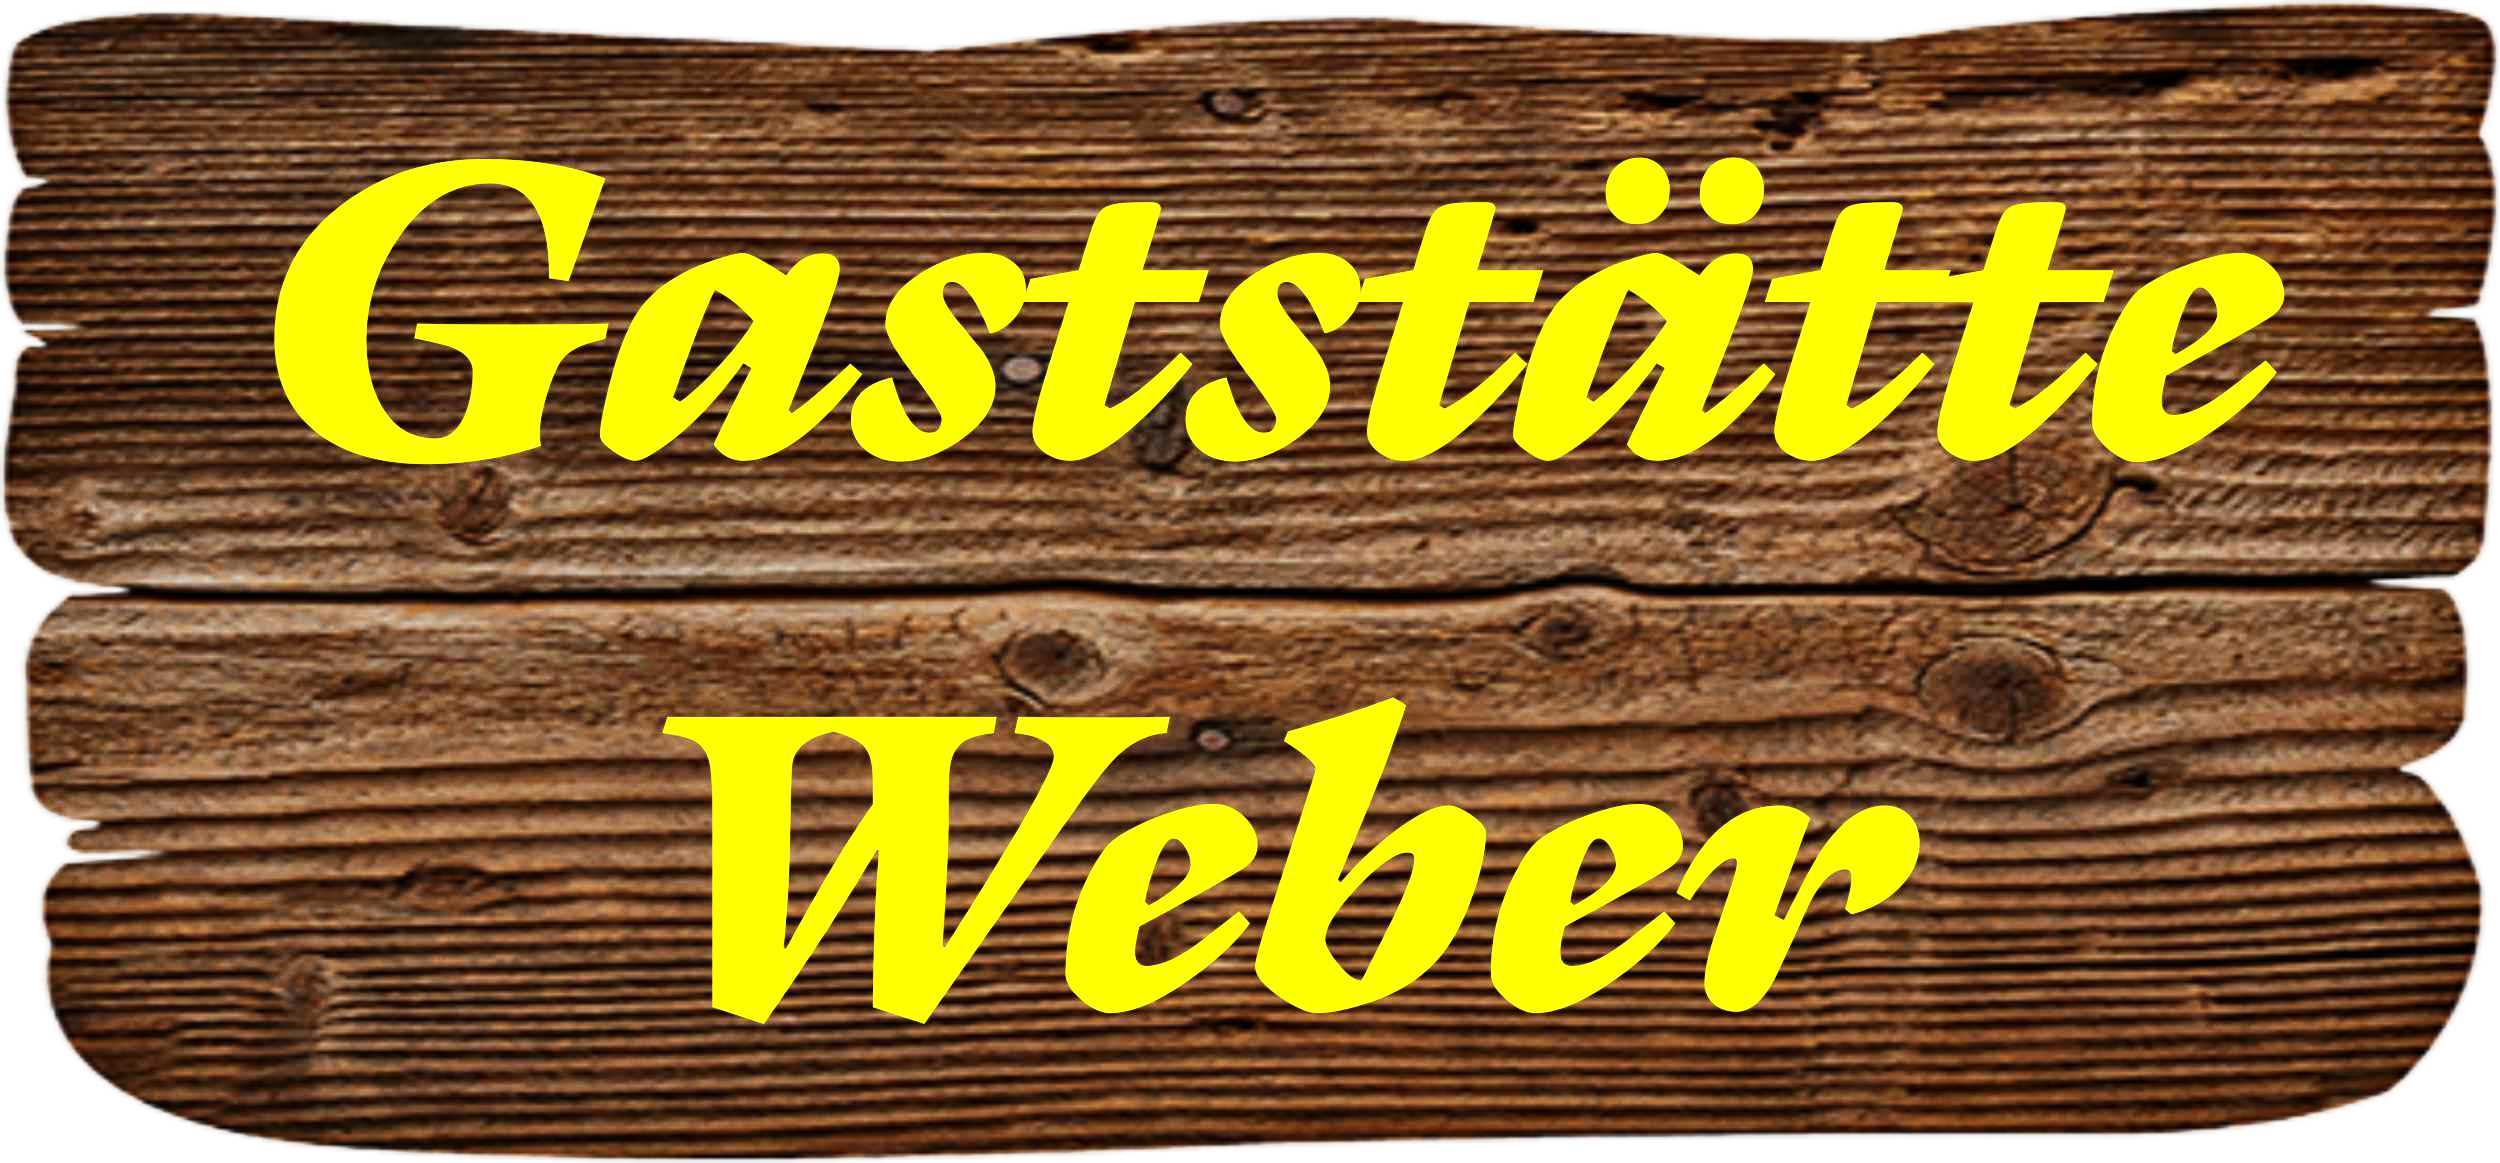 Gaststtte Weber